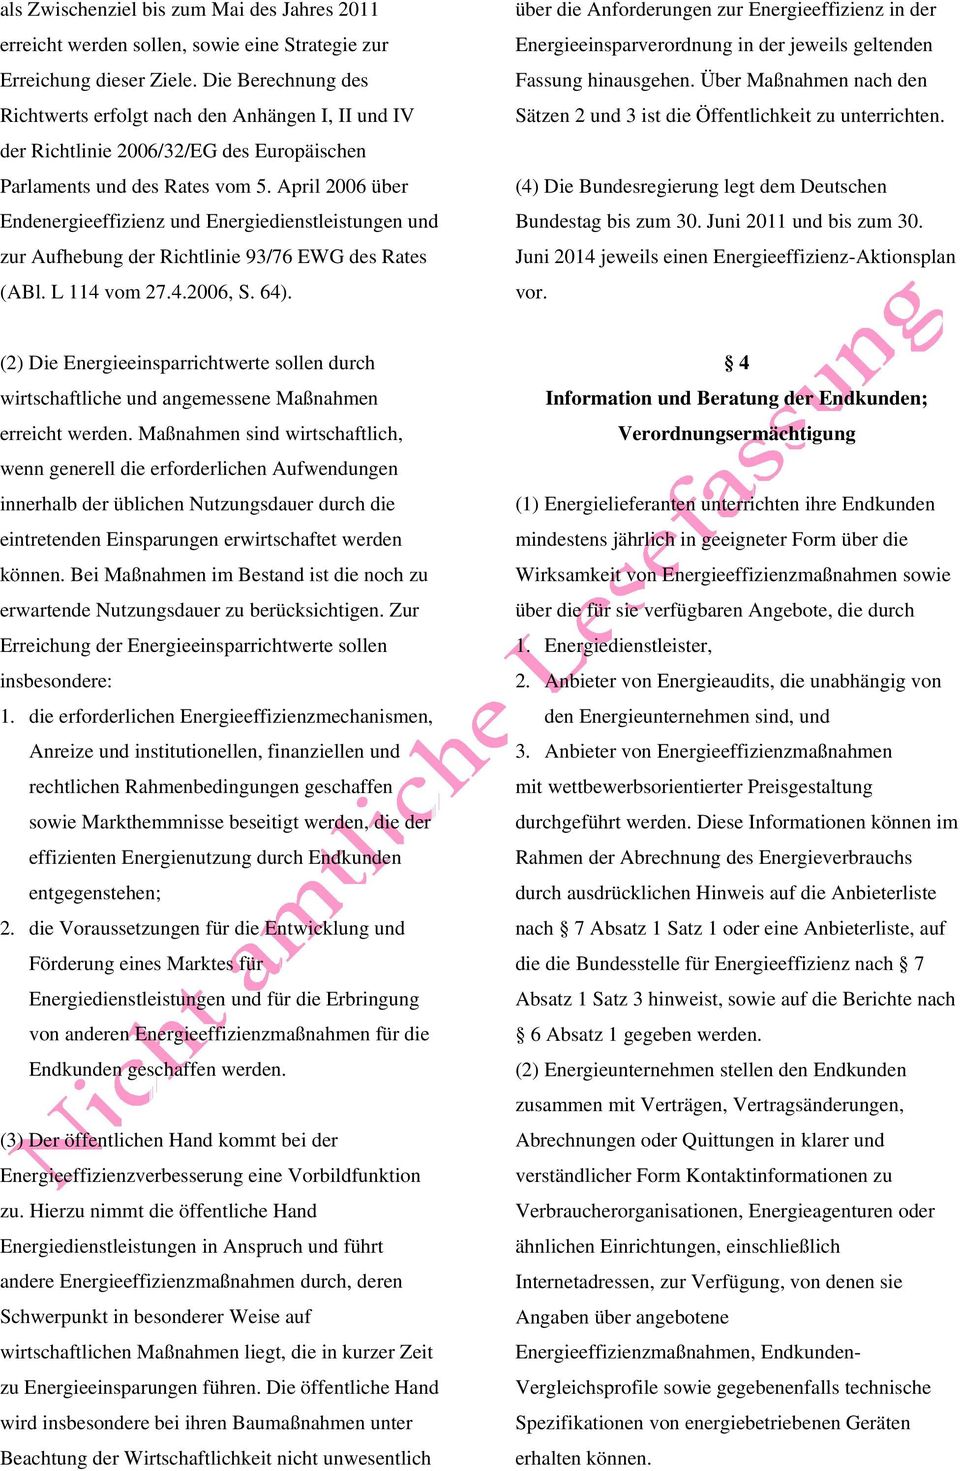 April 2006 über Endenergieeffizienz und Energiedienstleistungen und zur Aufhebung der Richtlinie 93/76 EWG des Rates (ABl. L 114 vom 27.4.2006, S. 64).